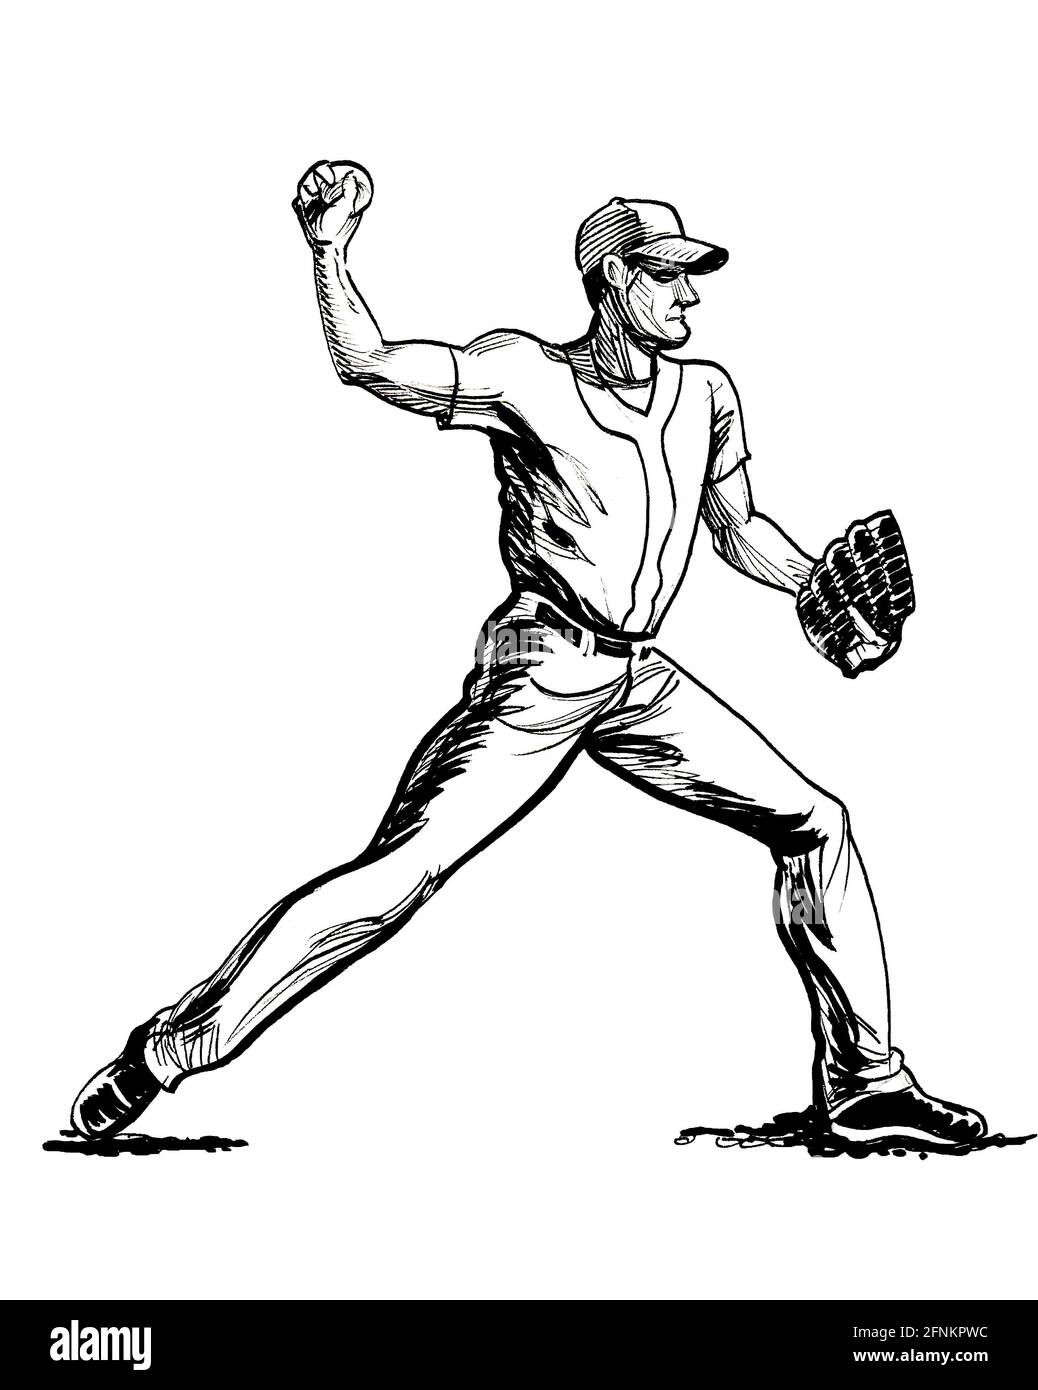 drawing baseball pitcher